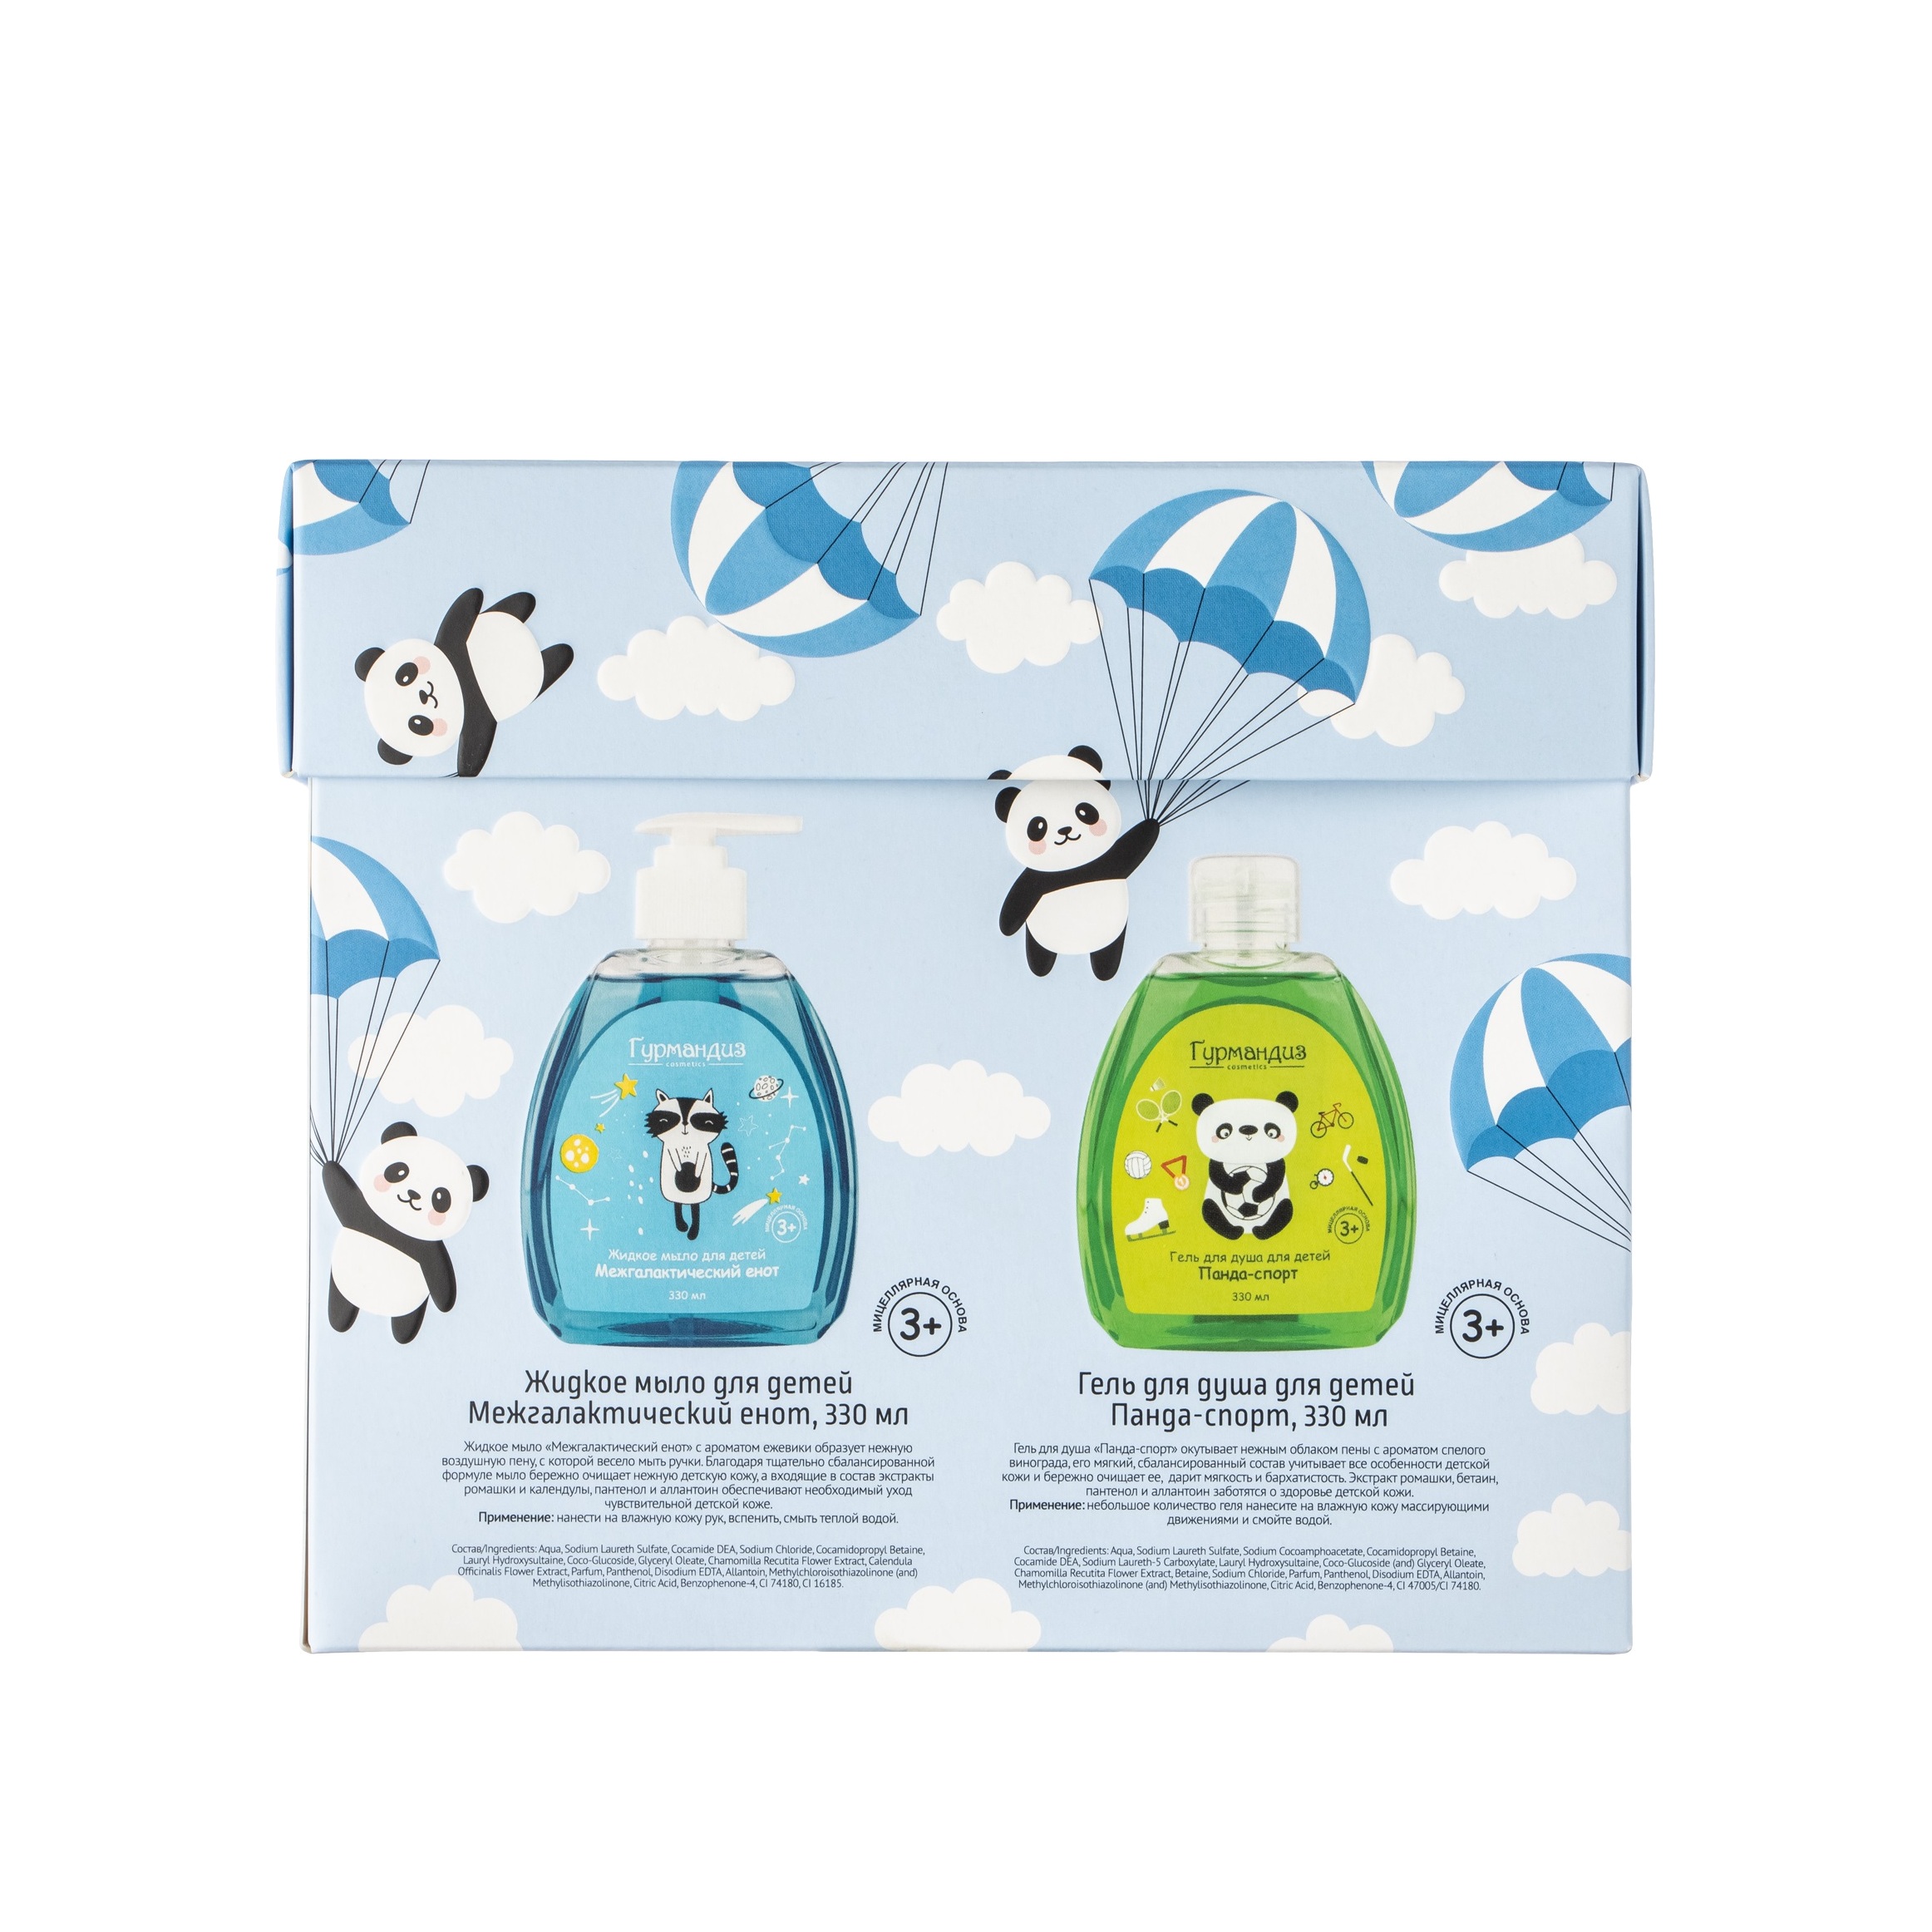 Набор детский: Жидкое мыло для детей Межгалактический енот+ Гель для душа для детей Панда-спорт купить в VISAGEHALL